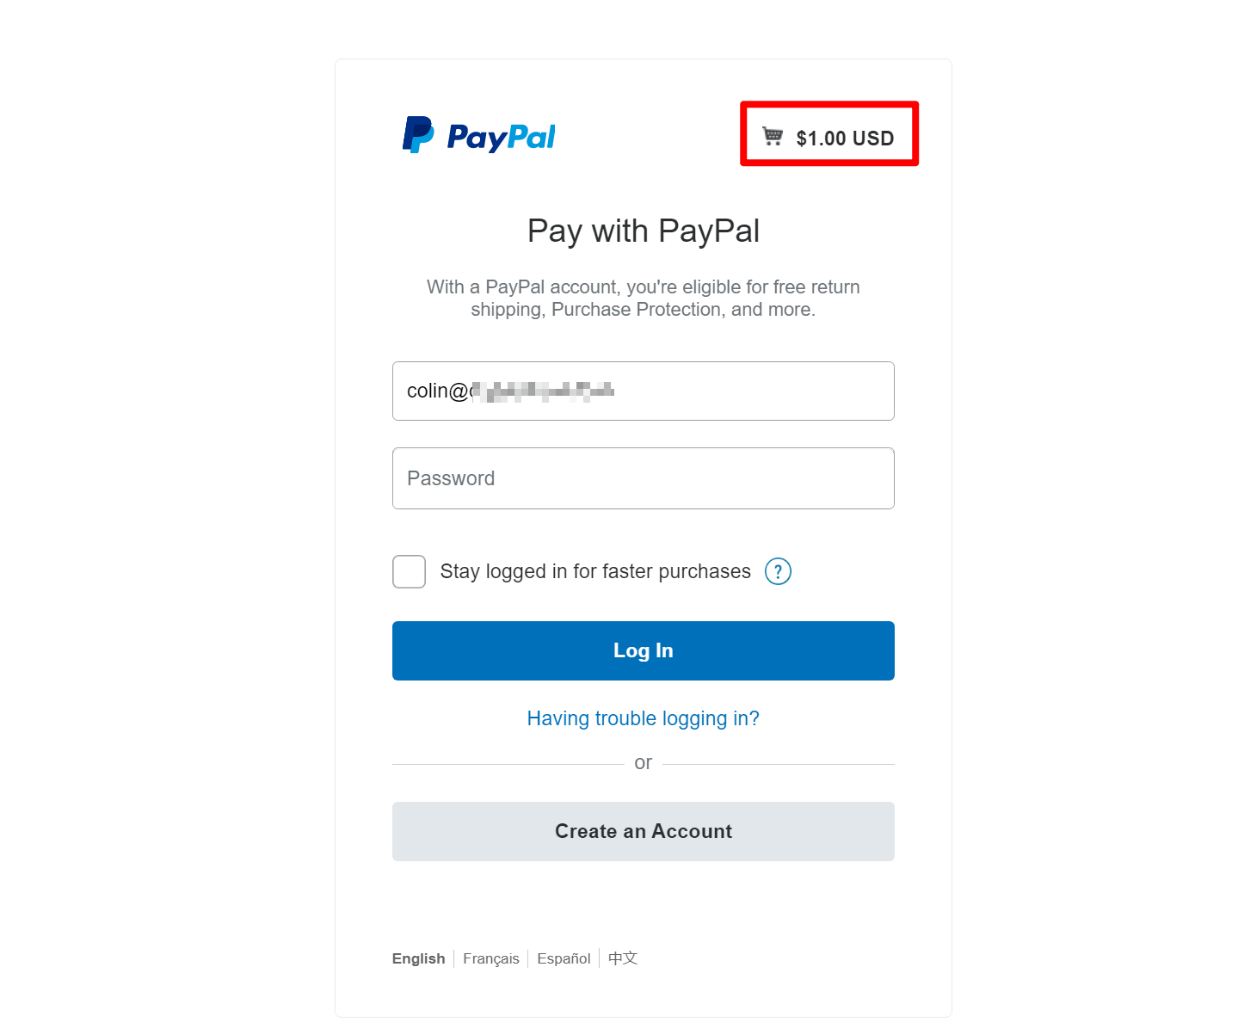 PayPal summary